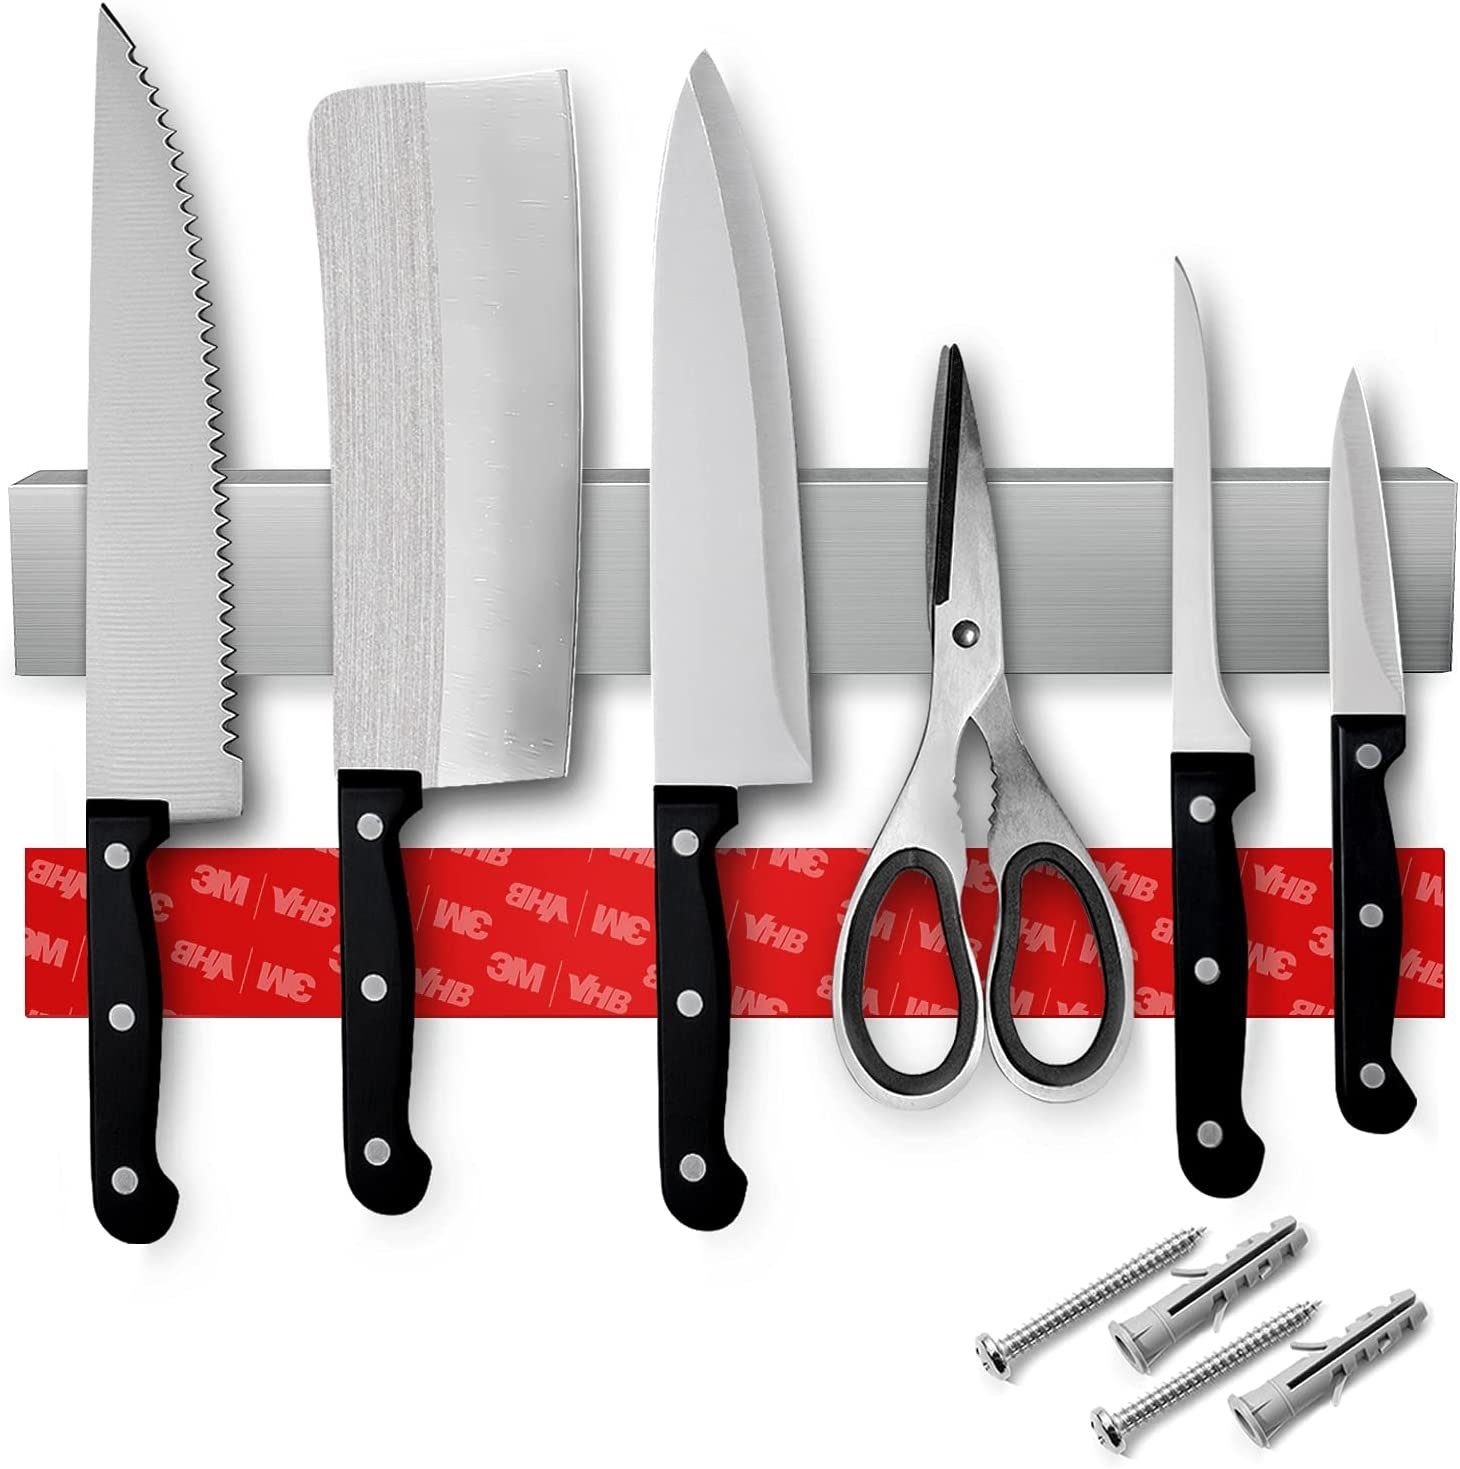 Loco Bird Wand-Magnet Messer-Leiste »Magnetleiste Messer 40cm -  selbstklebend mit 3M VHB Klebeband - Messerleiste Edelstahl für  Küchenutensilien oder Werkzeugen - Messerhalter magnetisch Wandmontage für  Küche ohne Bohren« (1tlg) online kaufen | OTTO